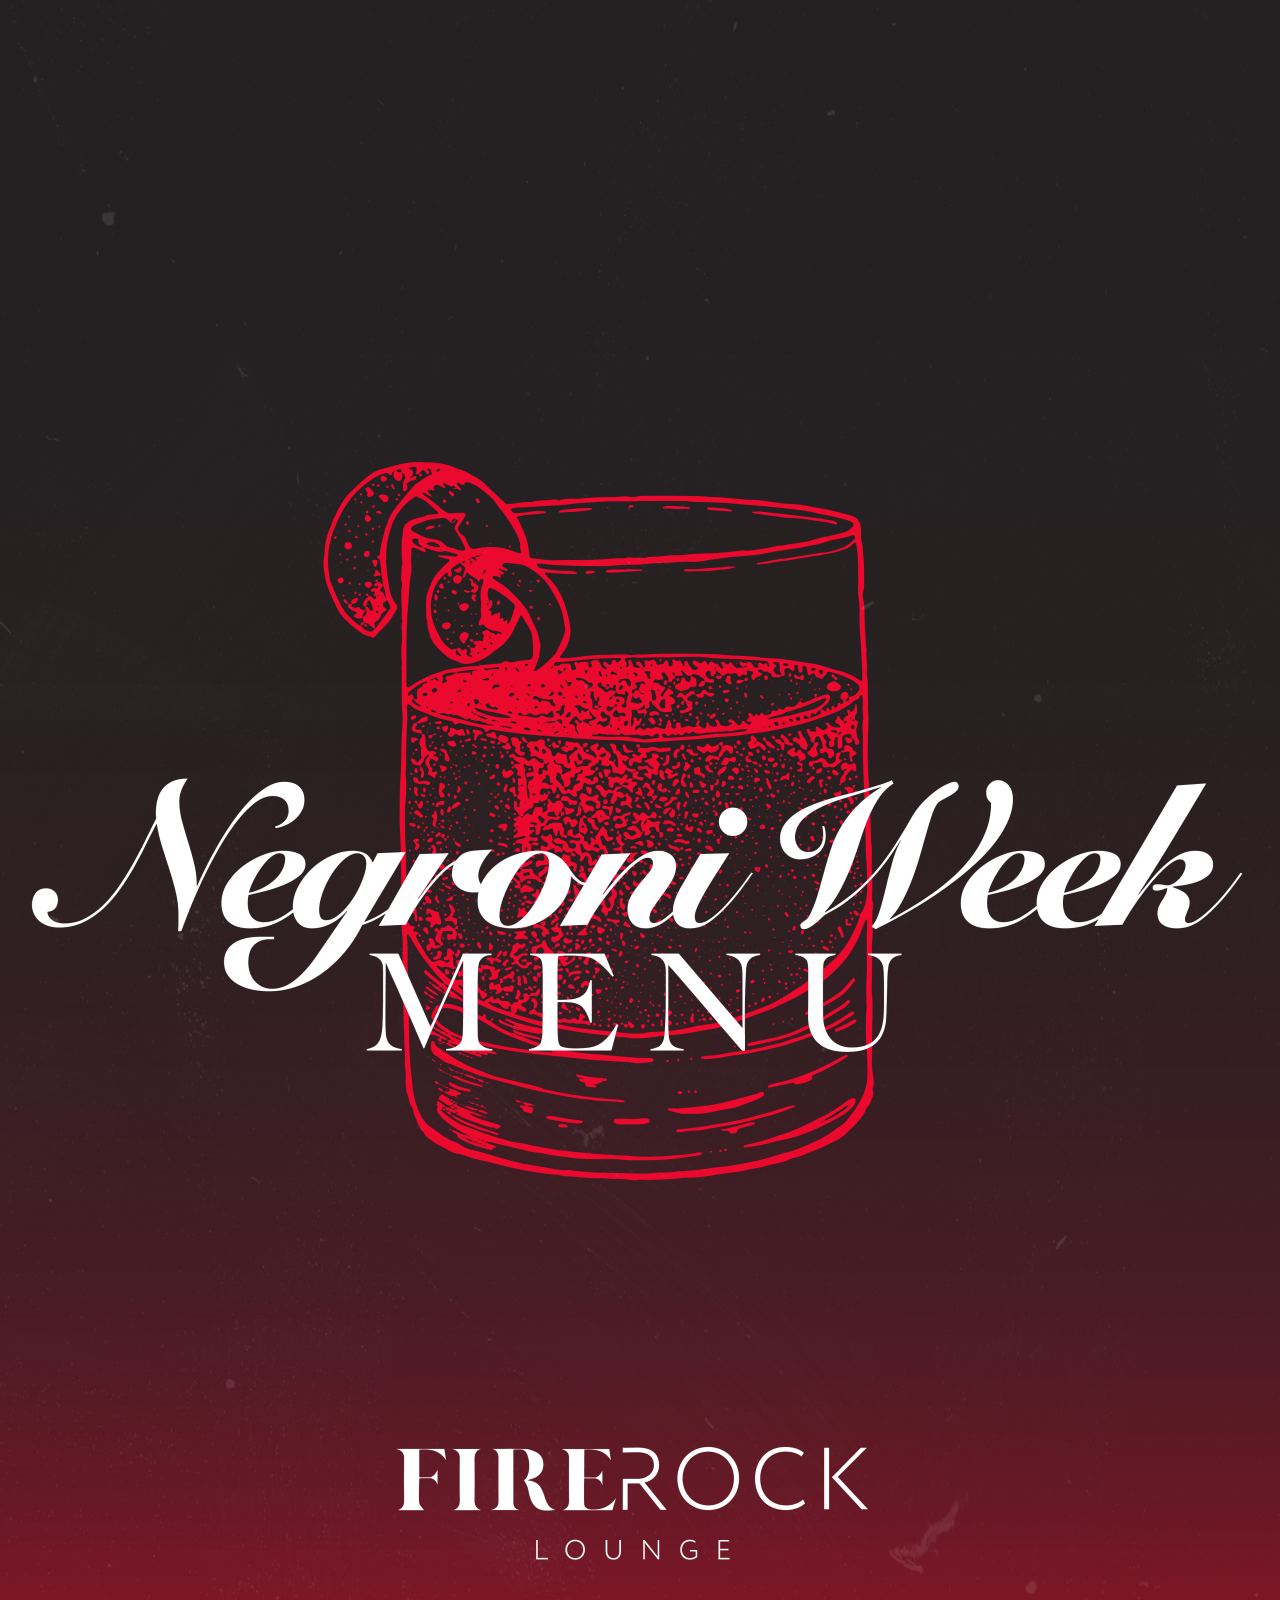 Negroni Week 